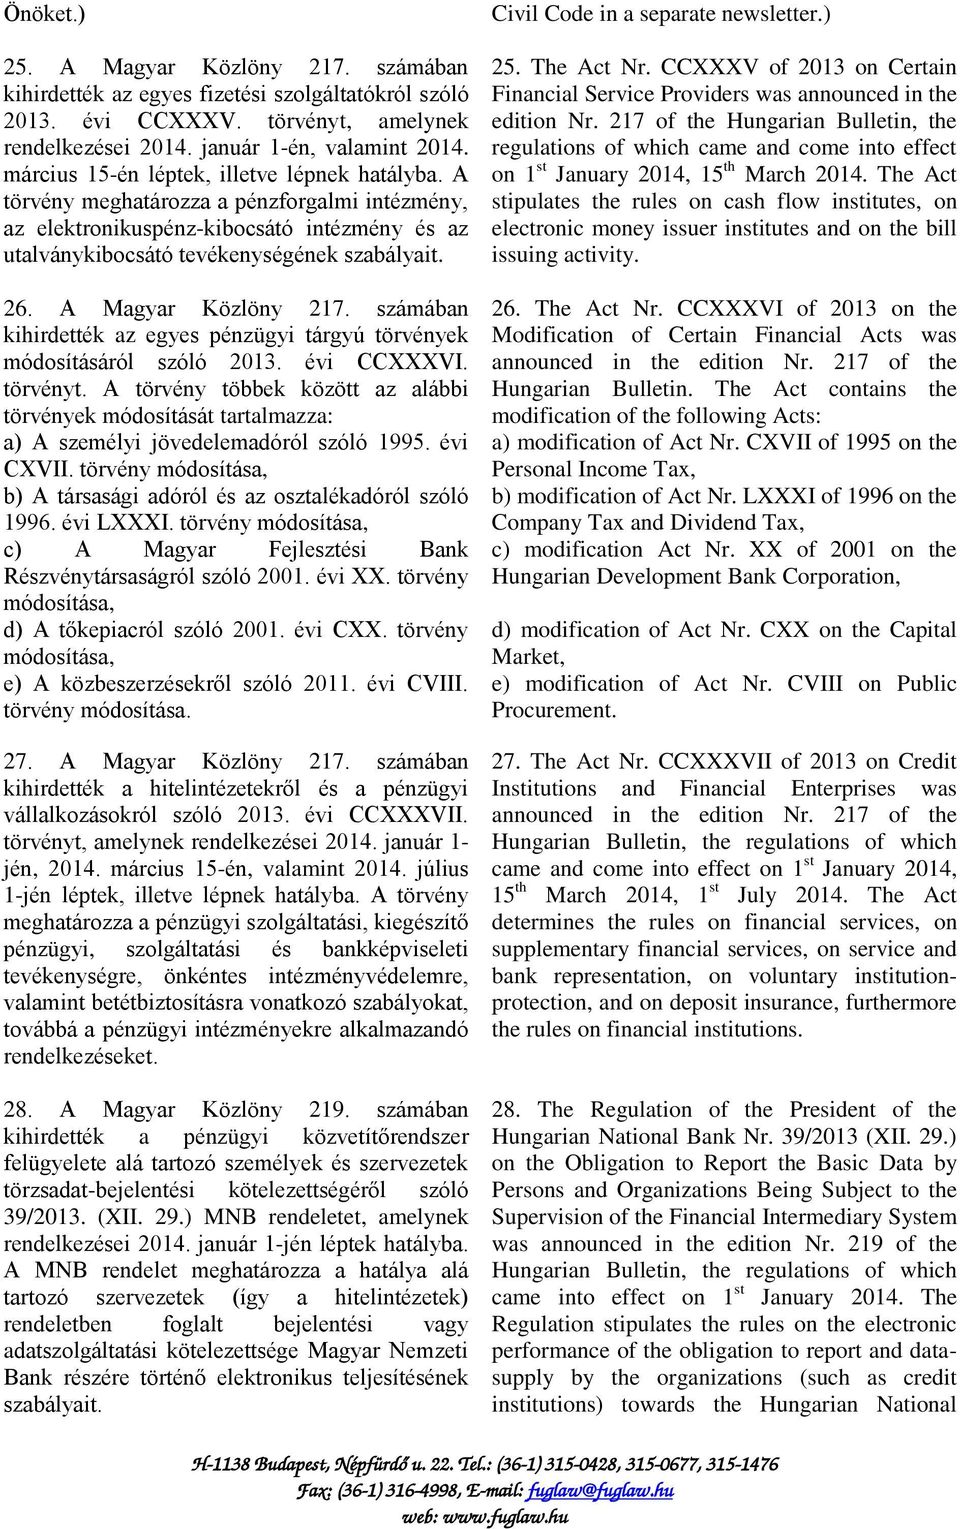 A Magyar Közlöny 217. számában kihirdették az egyes pénzügyi tárgyú törvények módosításáról szóló 2013. évi CCXXXVI. törvényt.